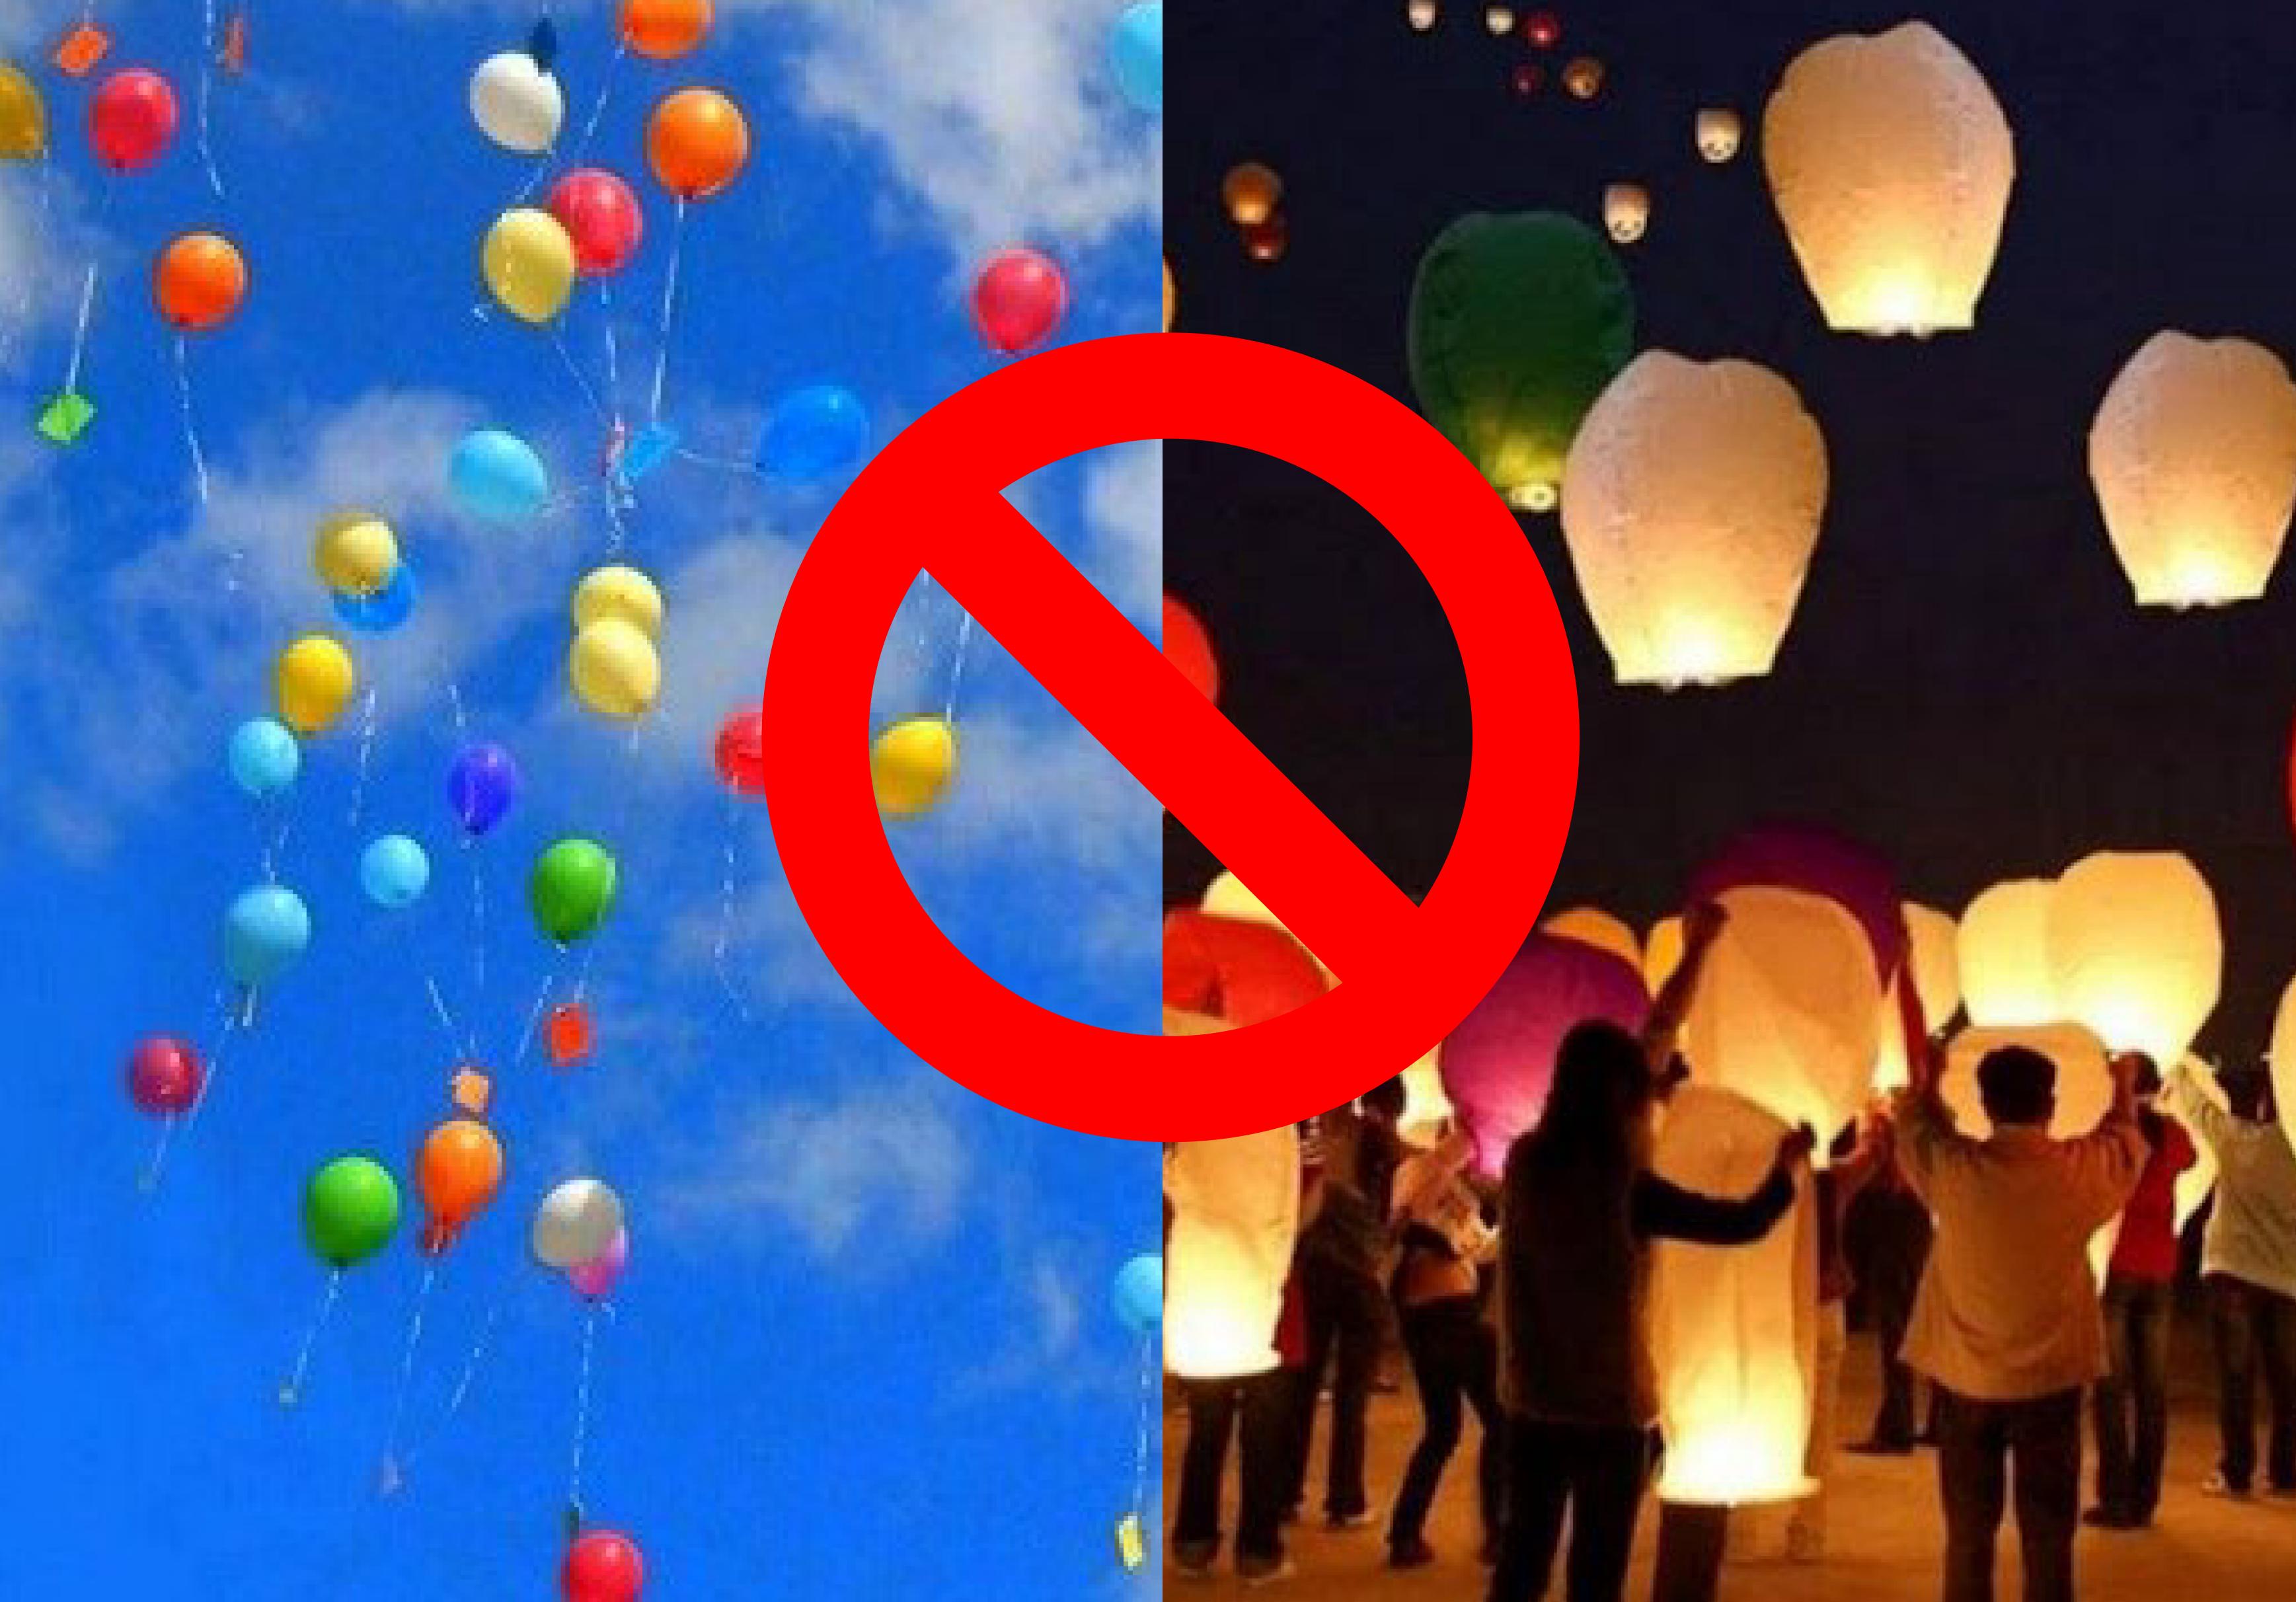 Divieto di rilascio volontario di palloncini, anche se biodegradabili, nastri colorati, lanterne cinesi, coriandoli di plastica o di altri dispositivi aerostatici idonei a disperdersi senza controllo nell'ambiente